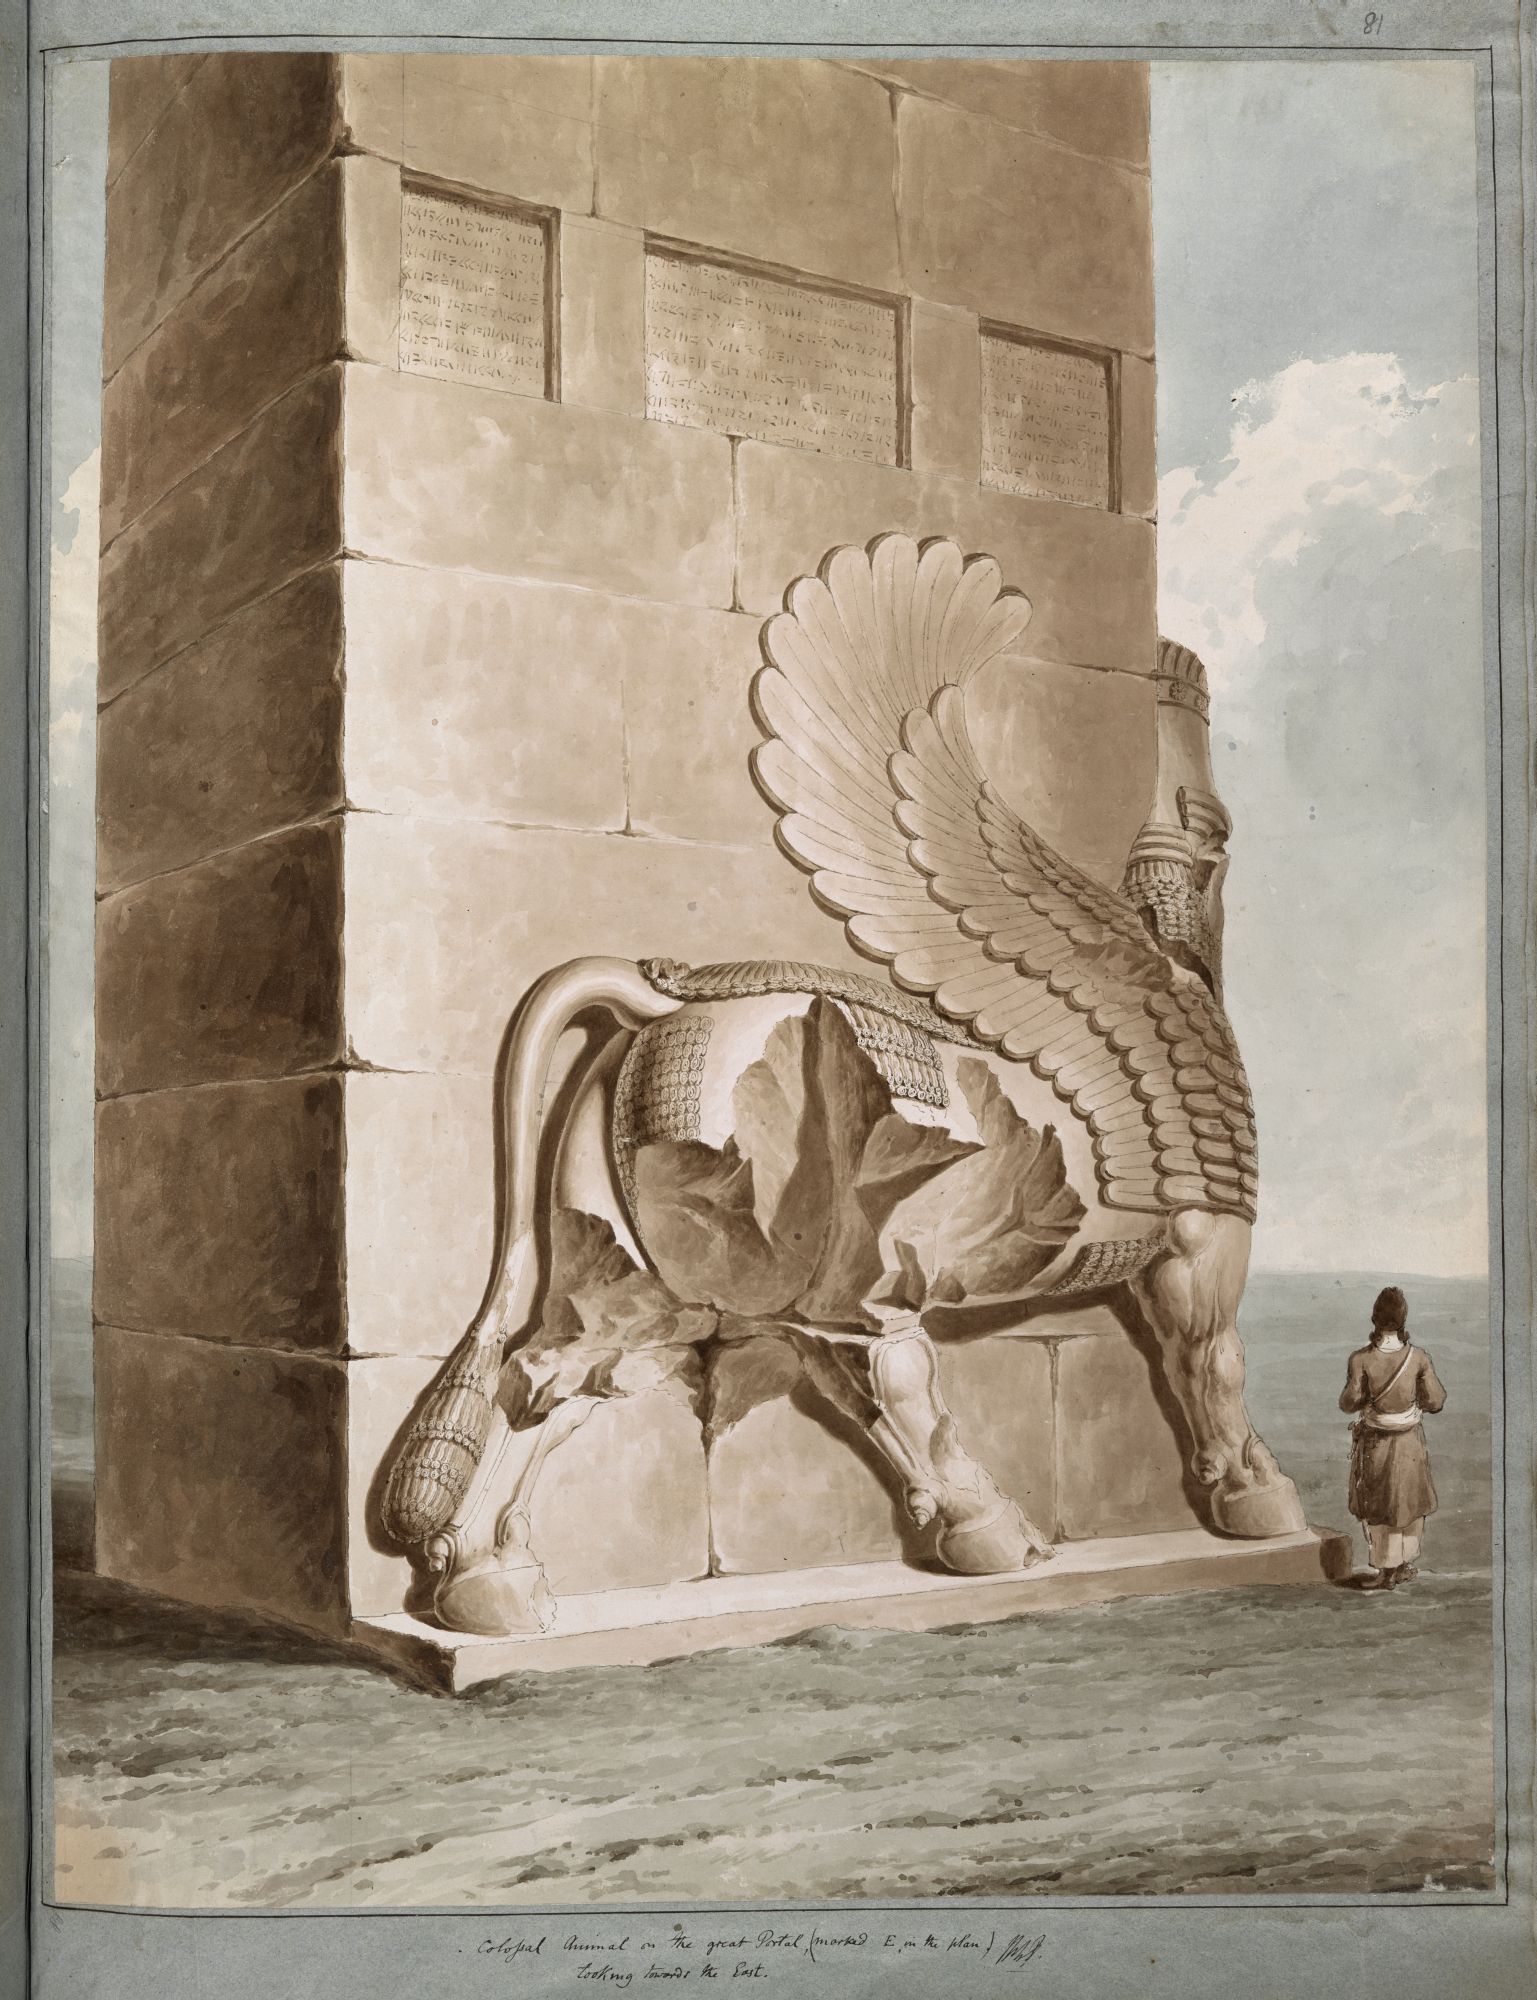 Taureau ailé à Persépolis. Le « lamassu », ou taureau ailé, était à l'origine un symbole de l'Empire assyrien, plus tard adopté par les dirigeants achéménides, comme on le voit ici dans les propylées de Persépolis.